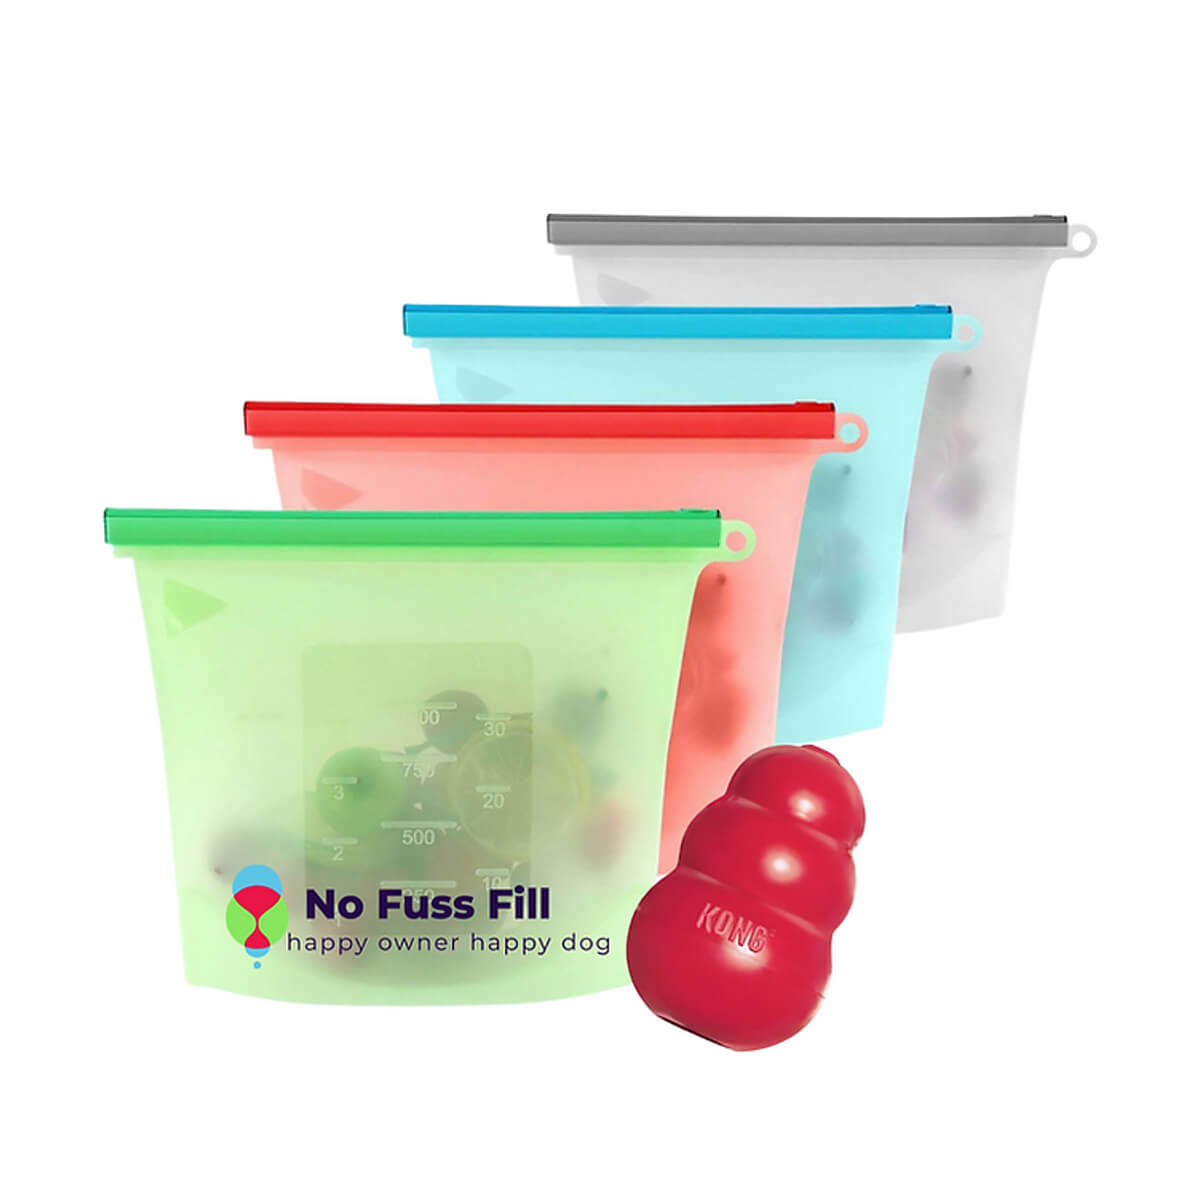 No Fuss Fill silikonipussi on kätevä apuväline säilyttää lemmikin herkut ja ruokalelut siististi jääkaapissa, pakastimessa sekä kuljettaa matkoilla.